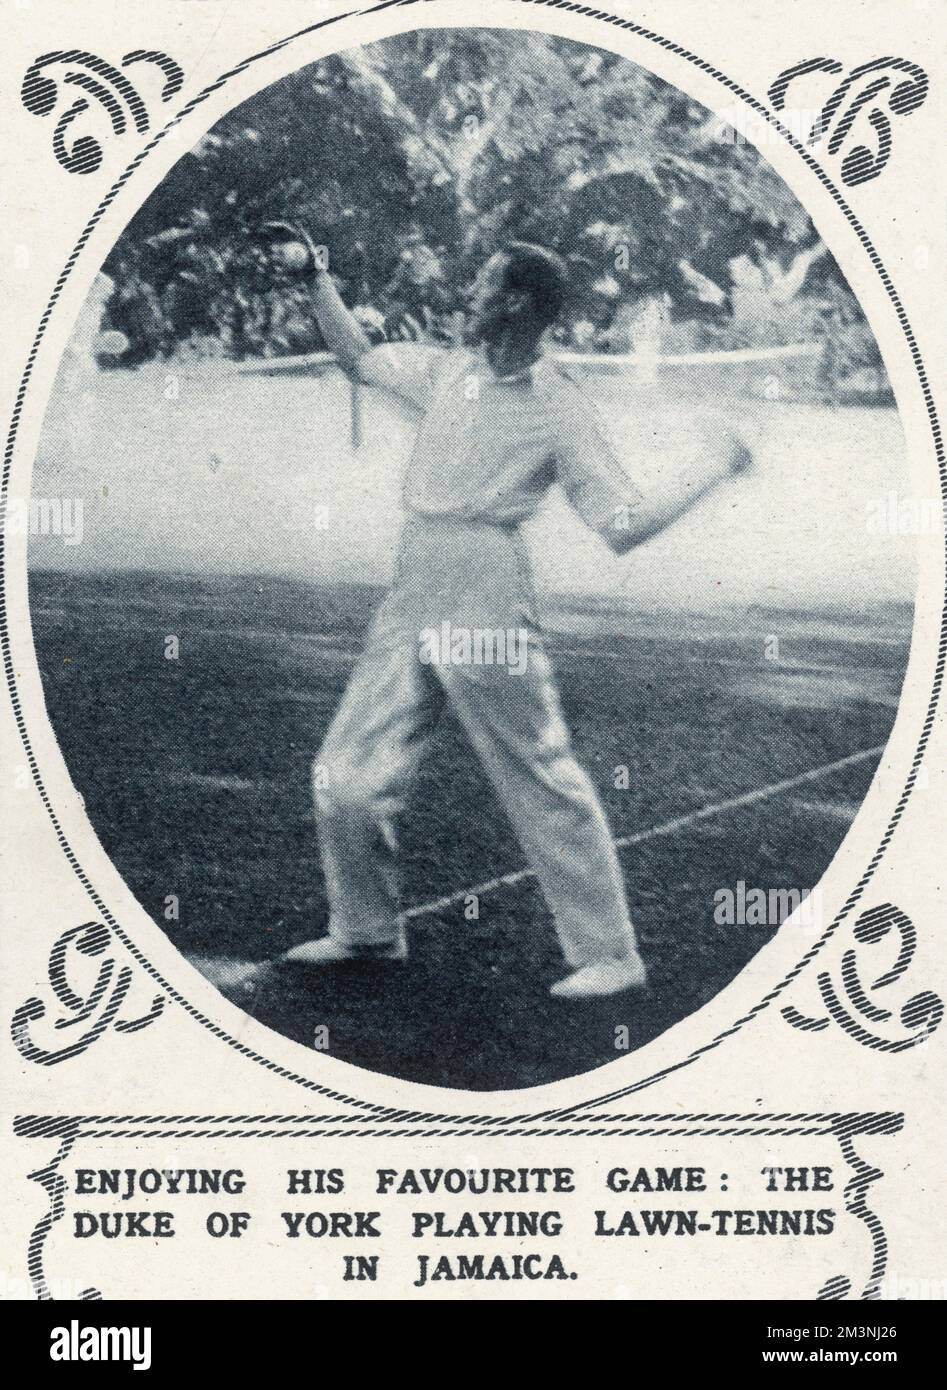 Le duc de York (plus tard le roi George VI) appréciant son jeu préféré - tennis - en Jamaïque. Date: 1927 Banque D'Images